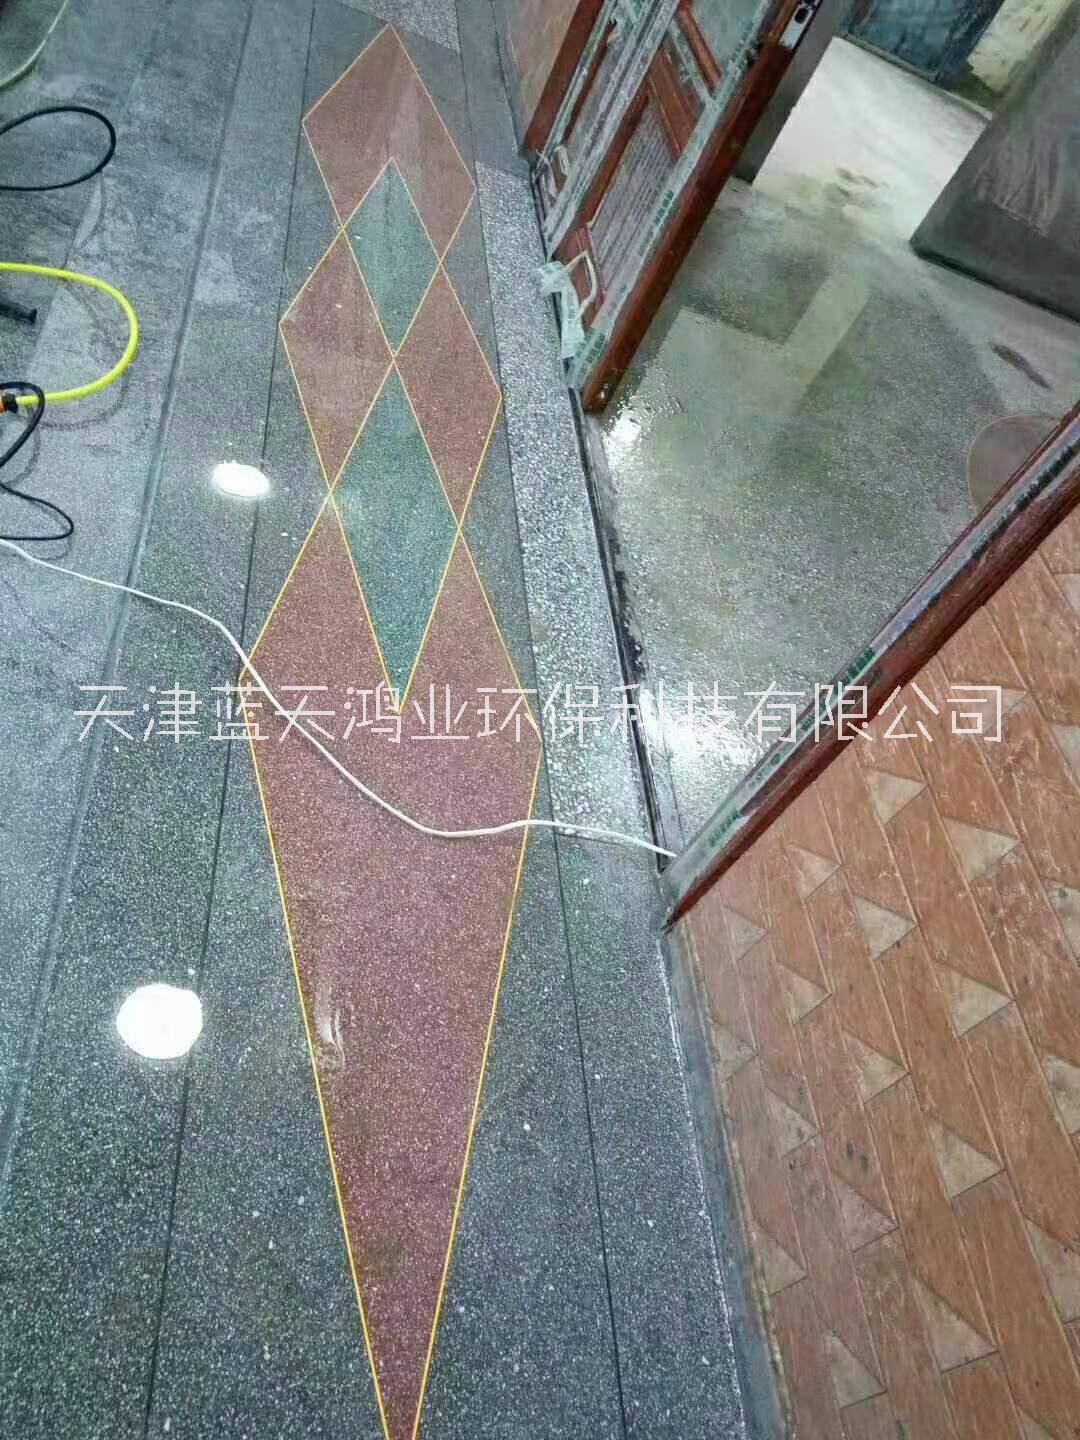 天津蓝天鸿业环保科技有限公司